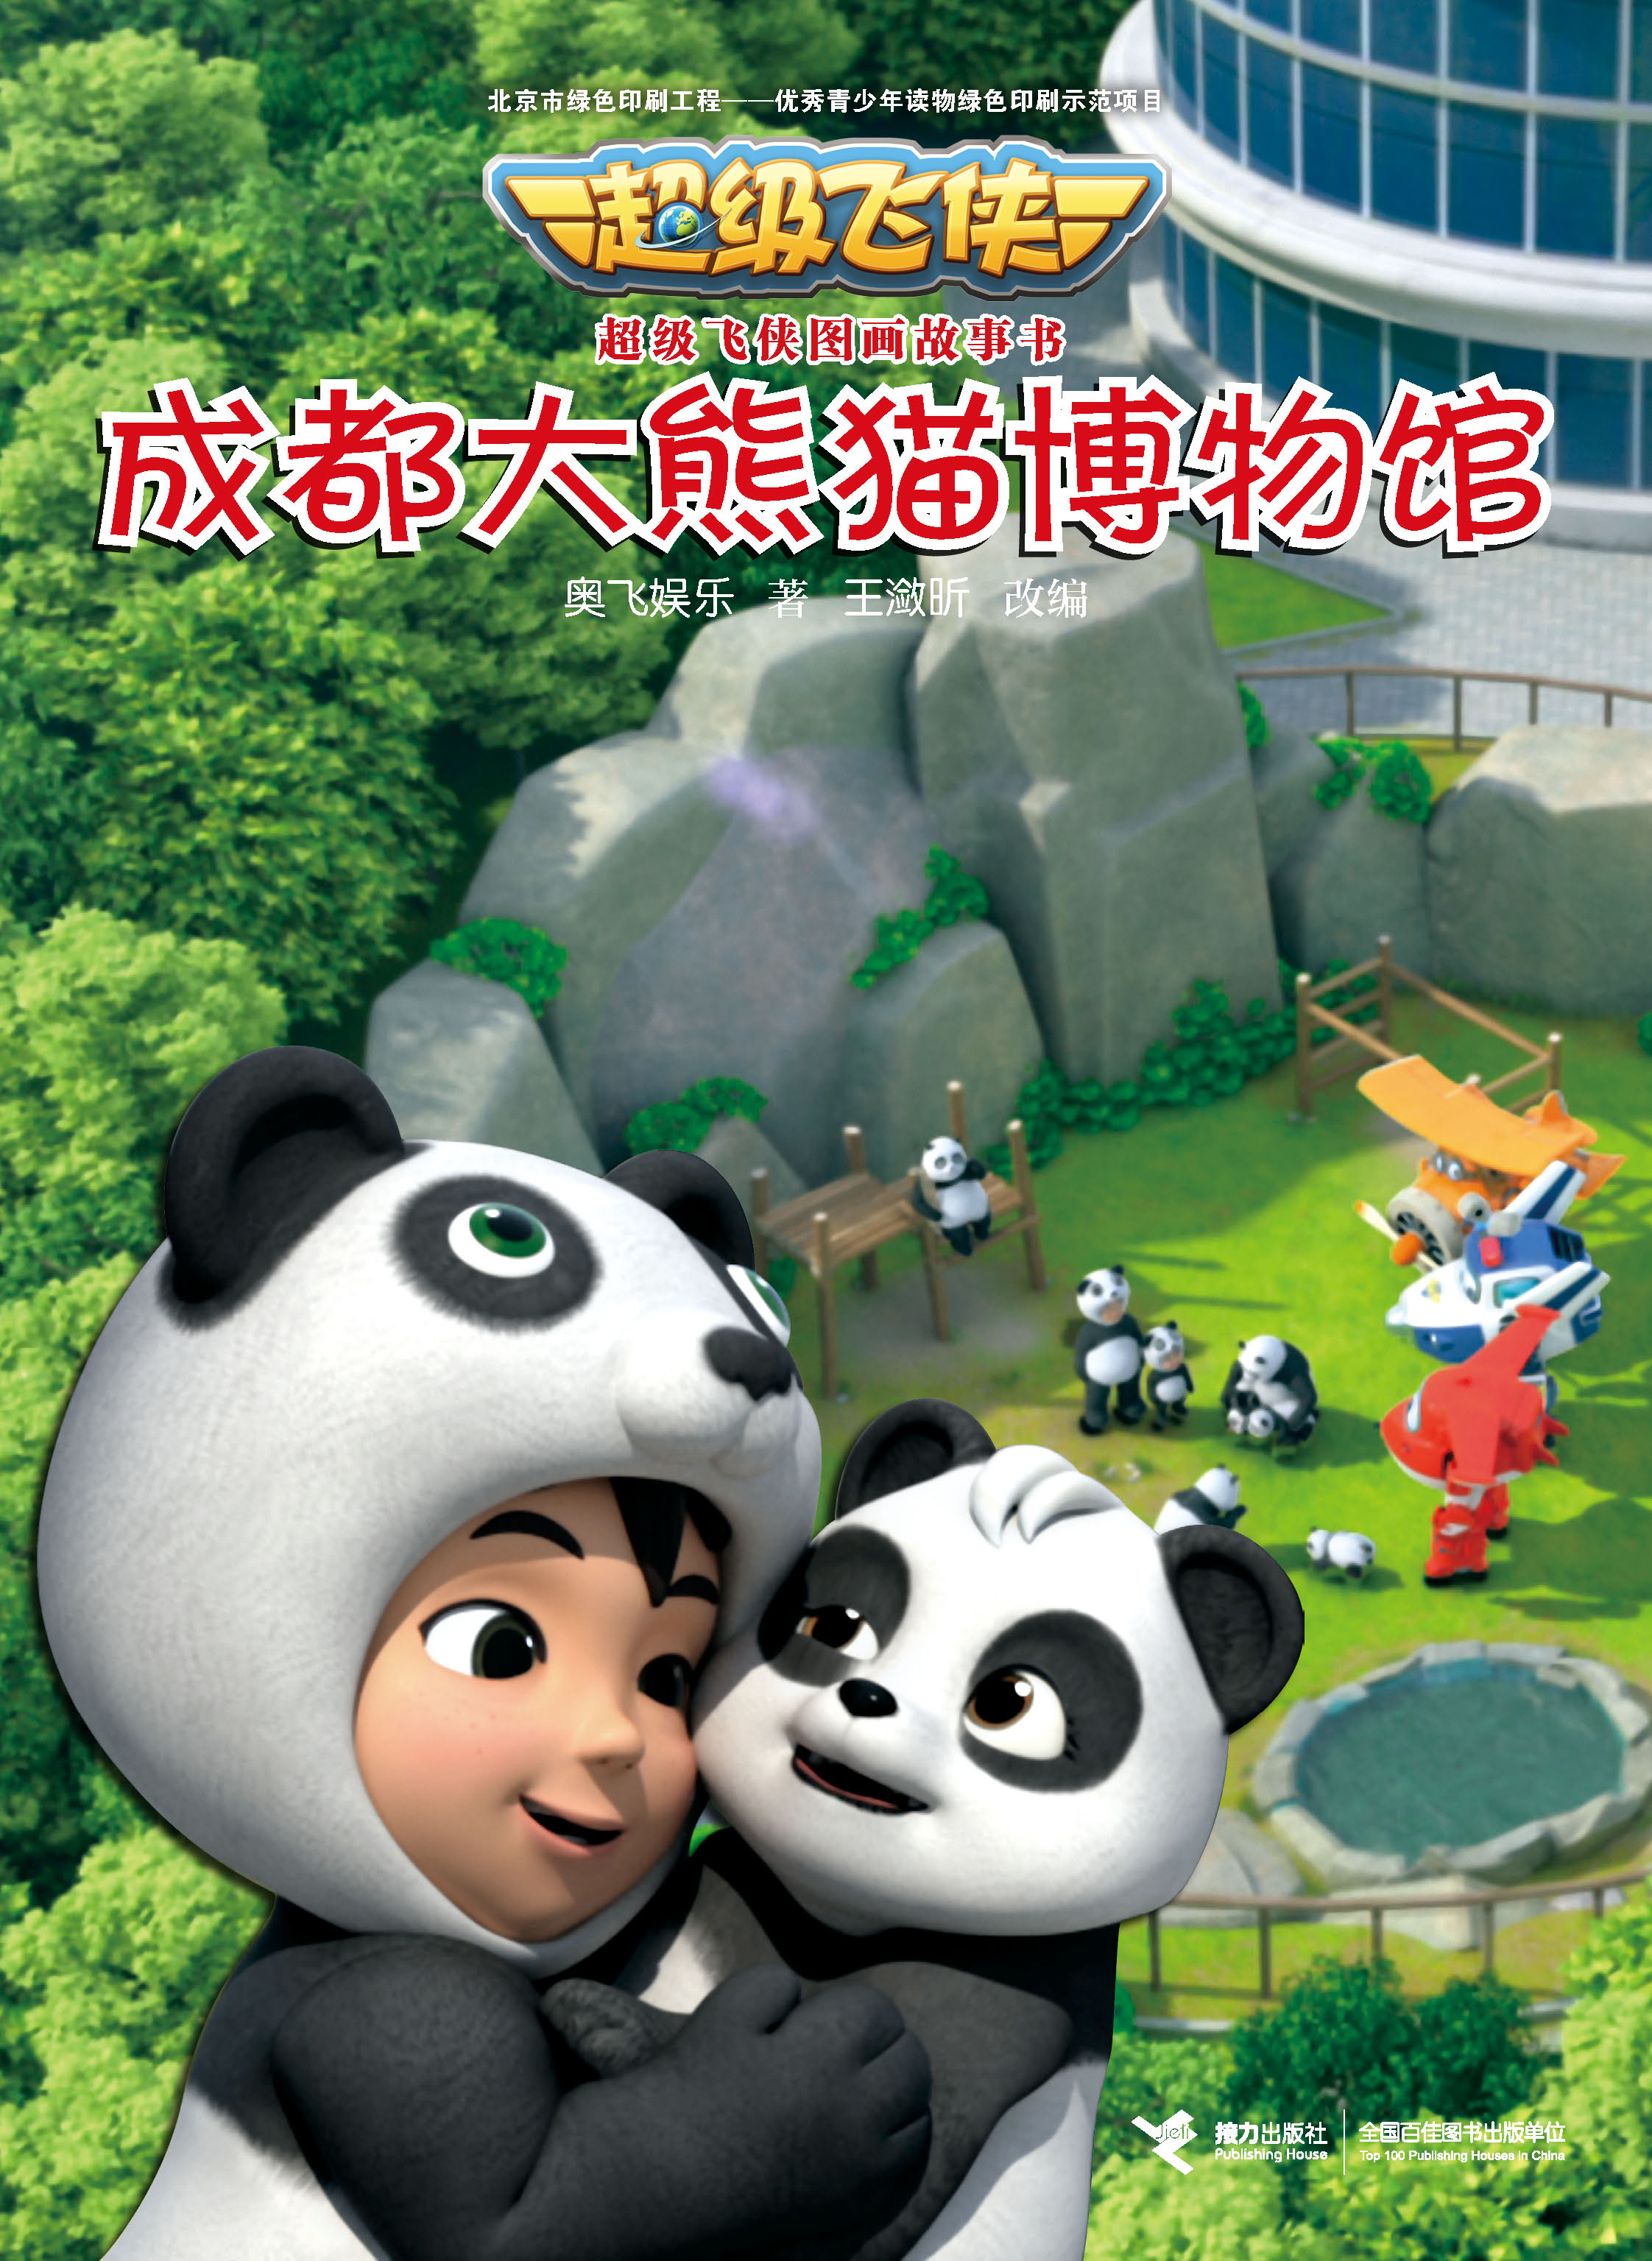 成都大熊猫博物馆